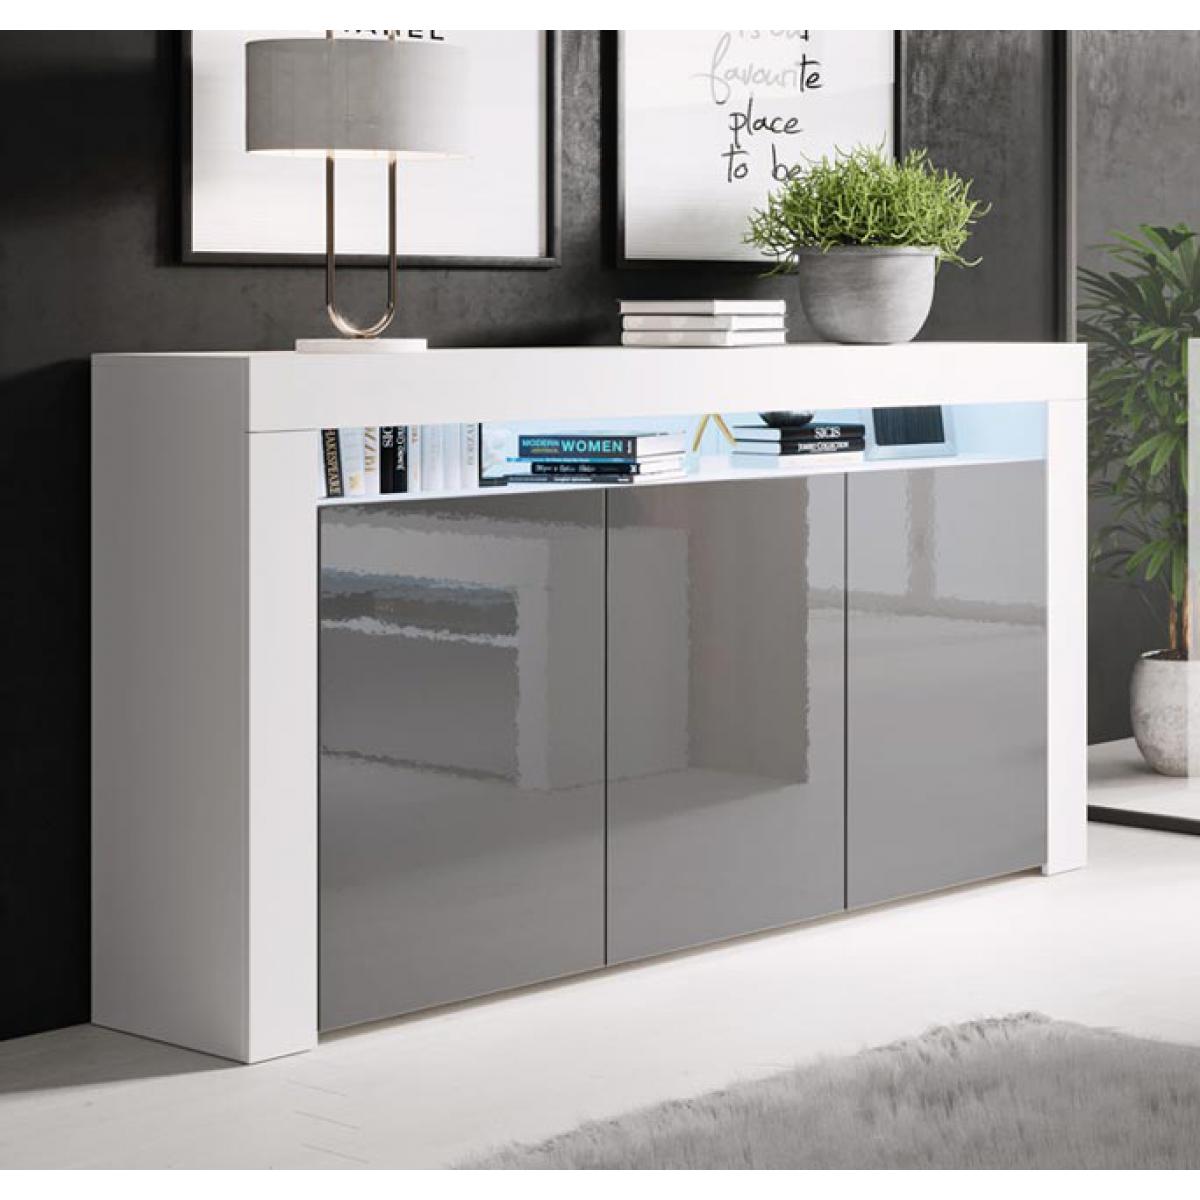 Design Ameublement - Buffet Bahut modèle Aker couleur blanc et gris - Buffets, chiffonniers